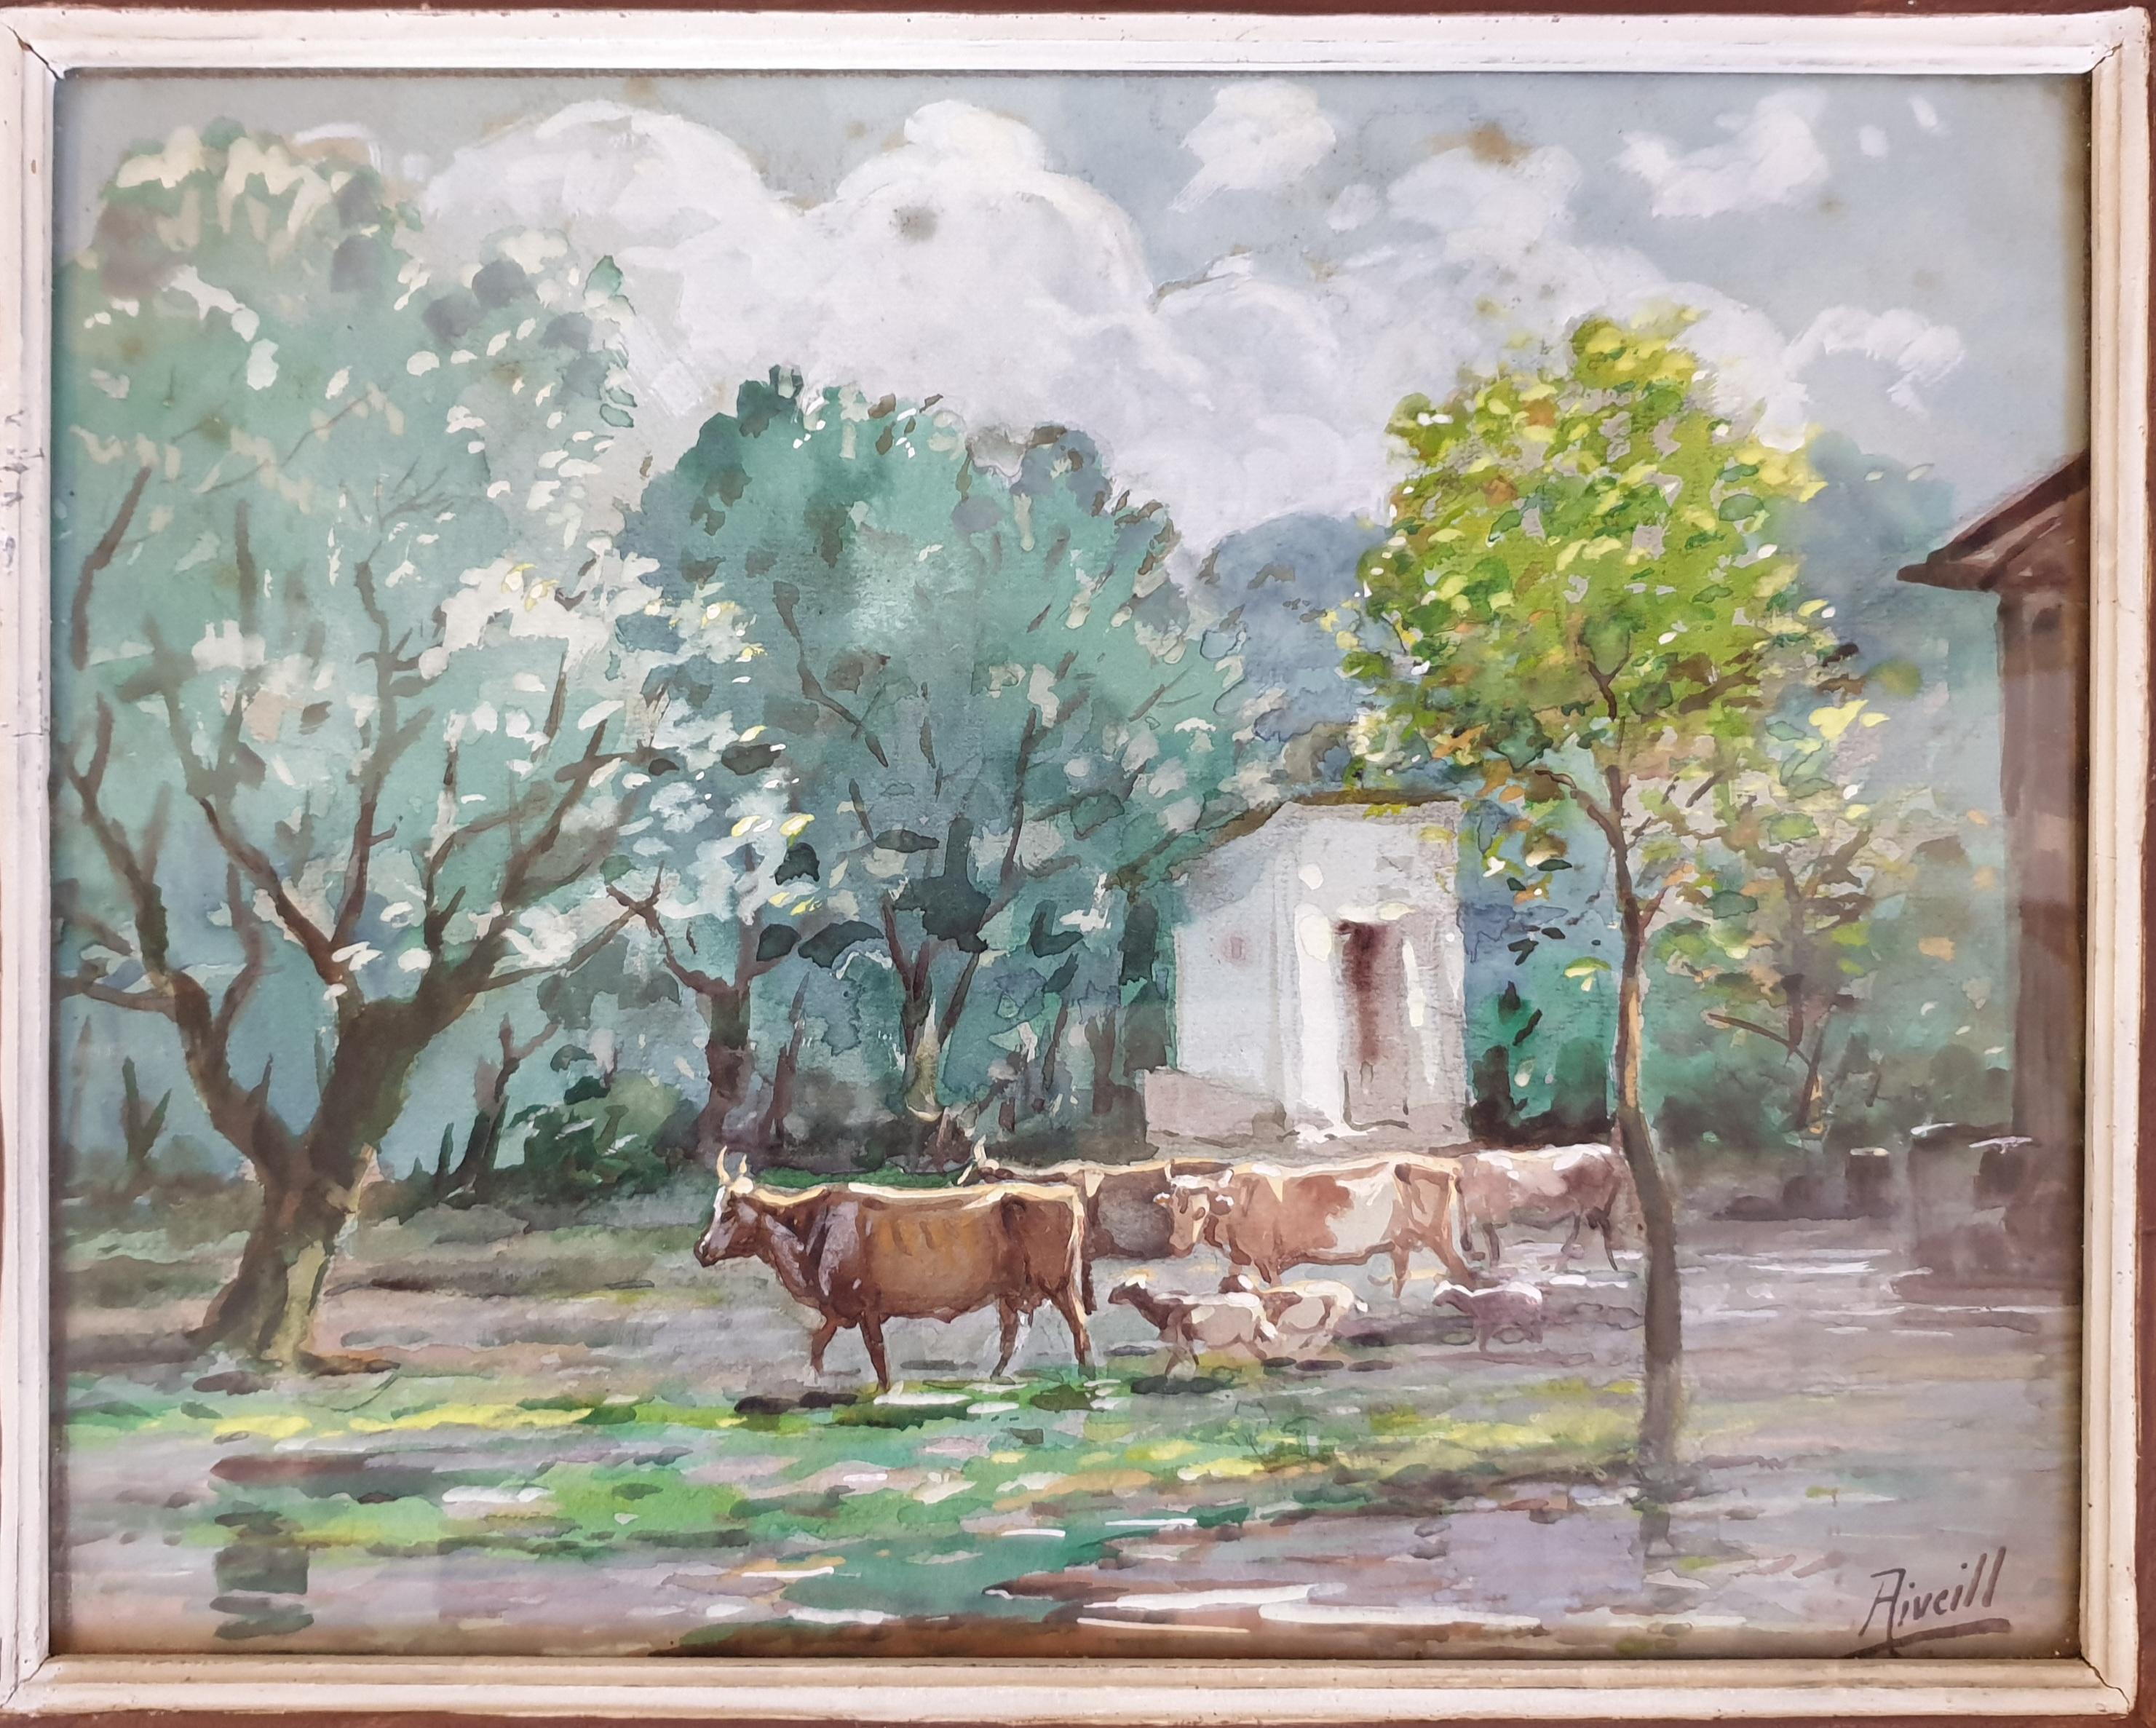 Rinder, Ziegen und Schafe grasen, orientalisches Aquarell. (Realismus), Art, von Aiveill